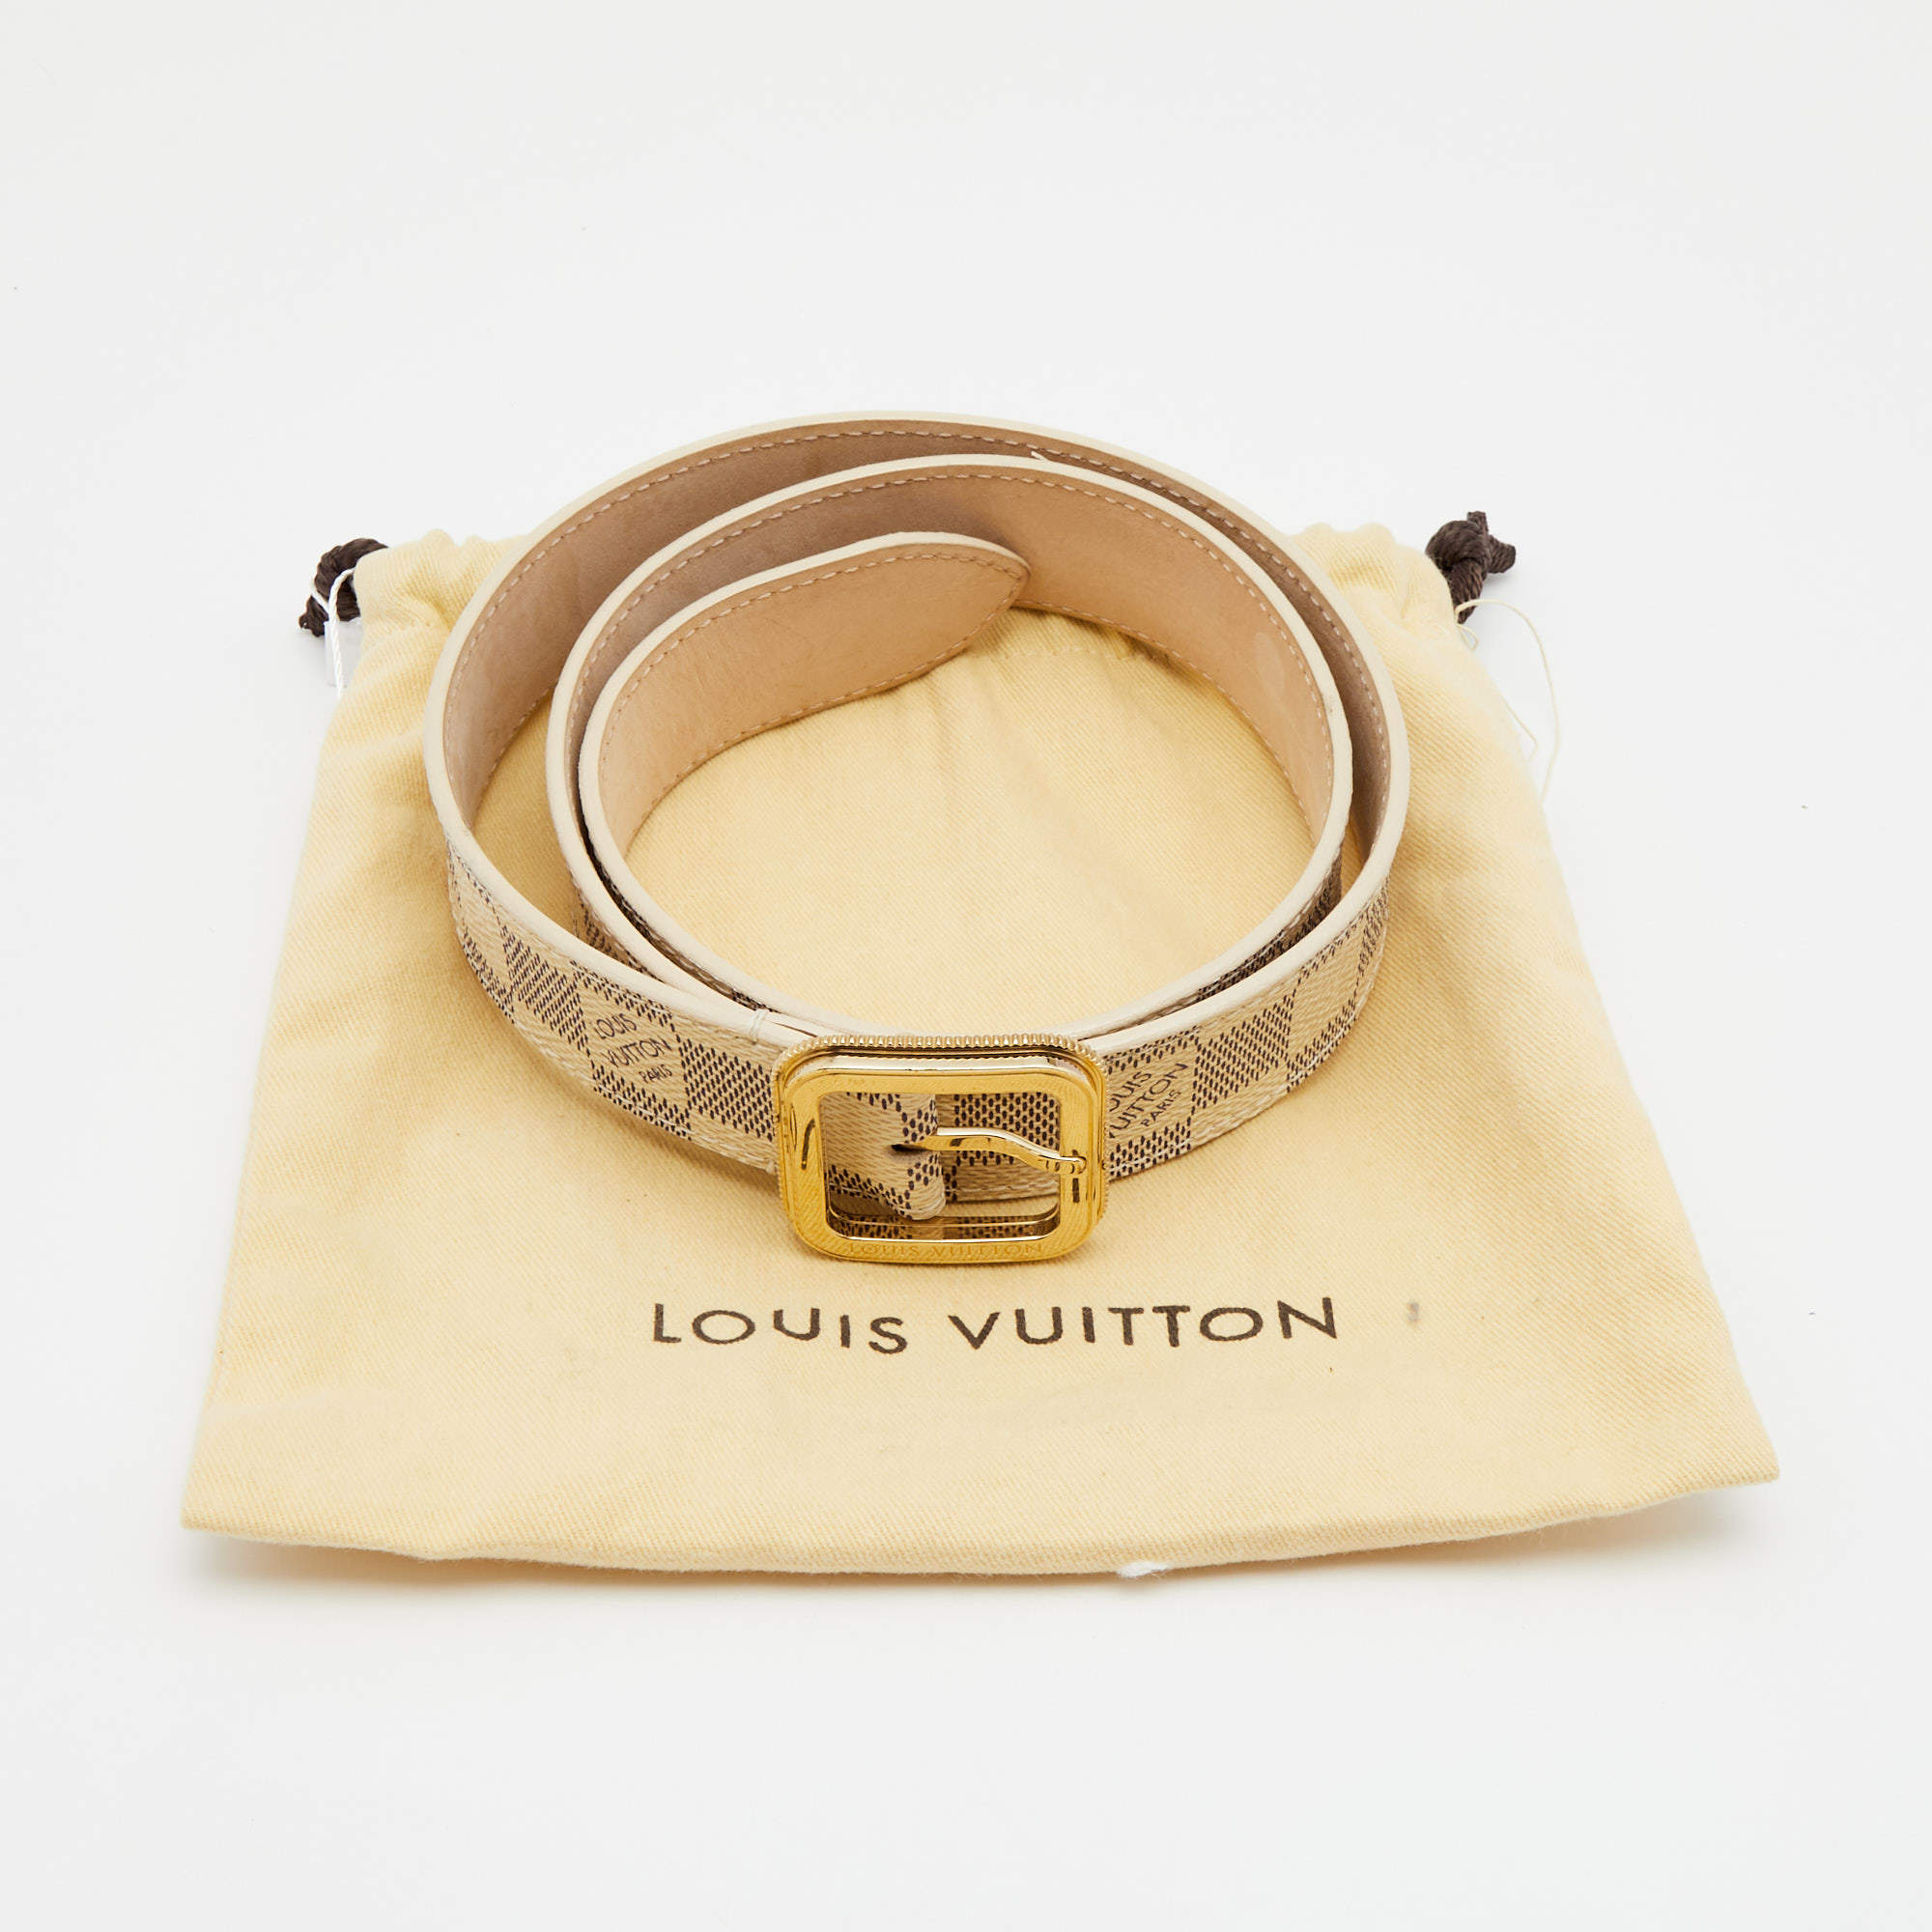 Louis Vuitton Damier Azur Canvas Tresor Belt Size 80 cm Louis